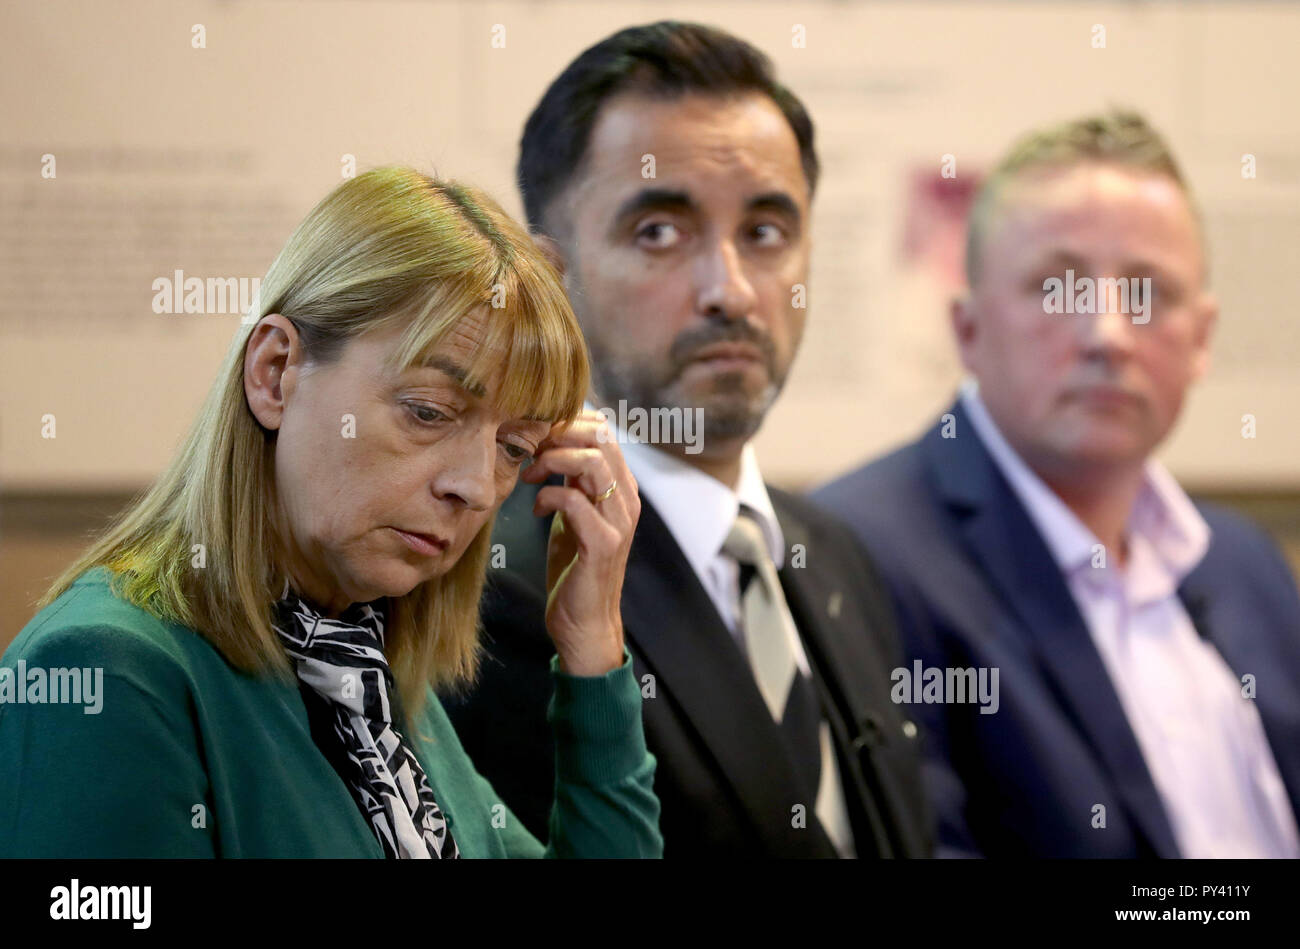 Stuart und Linda Allan, Eltern von Katie Allan, mit Rechtsanwalt Aamer Anwar (Mitte) während einer Pressekonferenz an der Universität Glasgow, eine Kampagne, die Art und Weise, wie die Justiz befasst sich mit der psychischen Gesundheit zu reformieren zu starten. Stockfoto